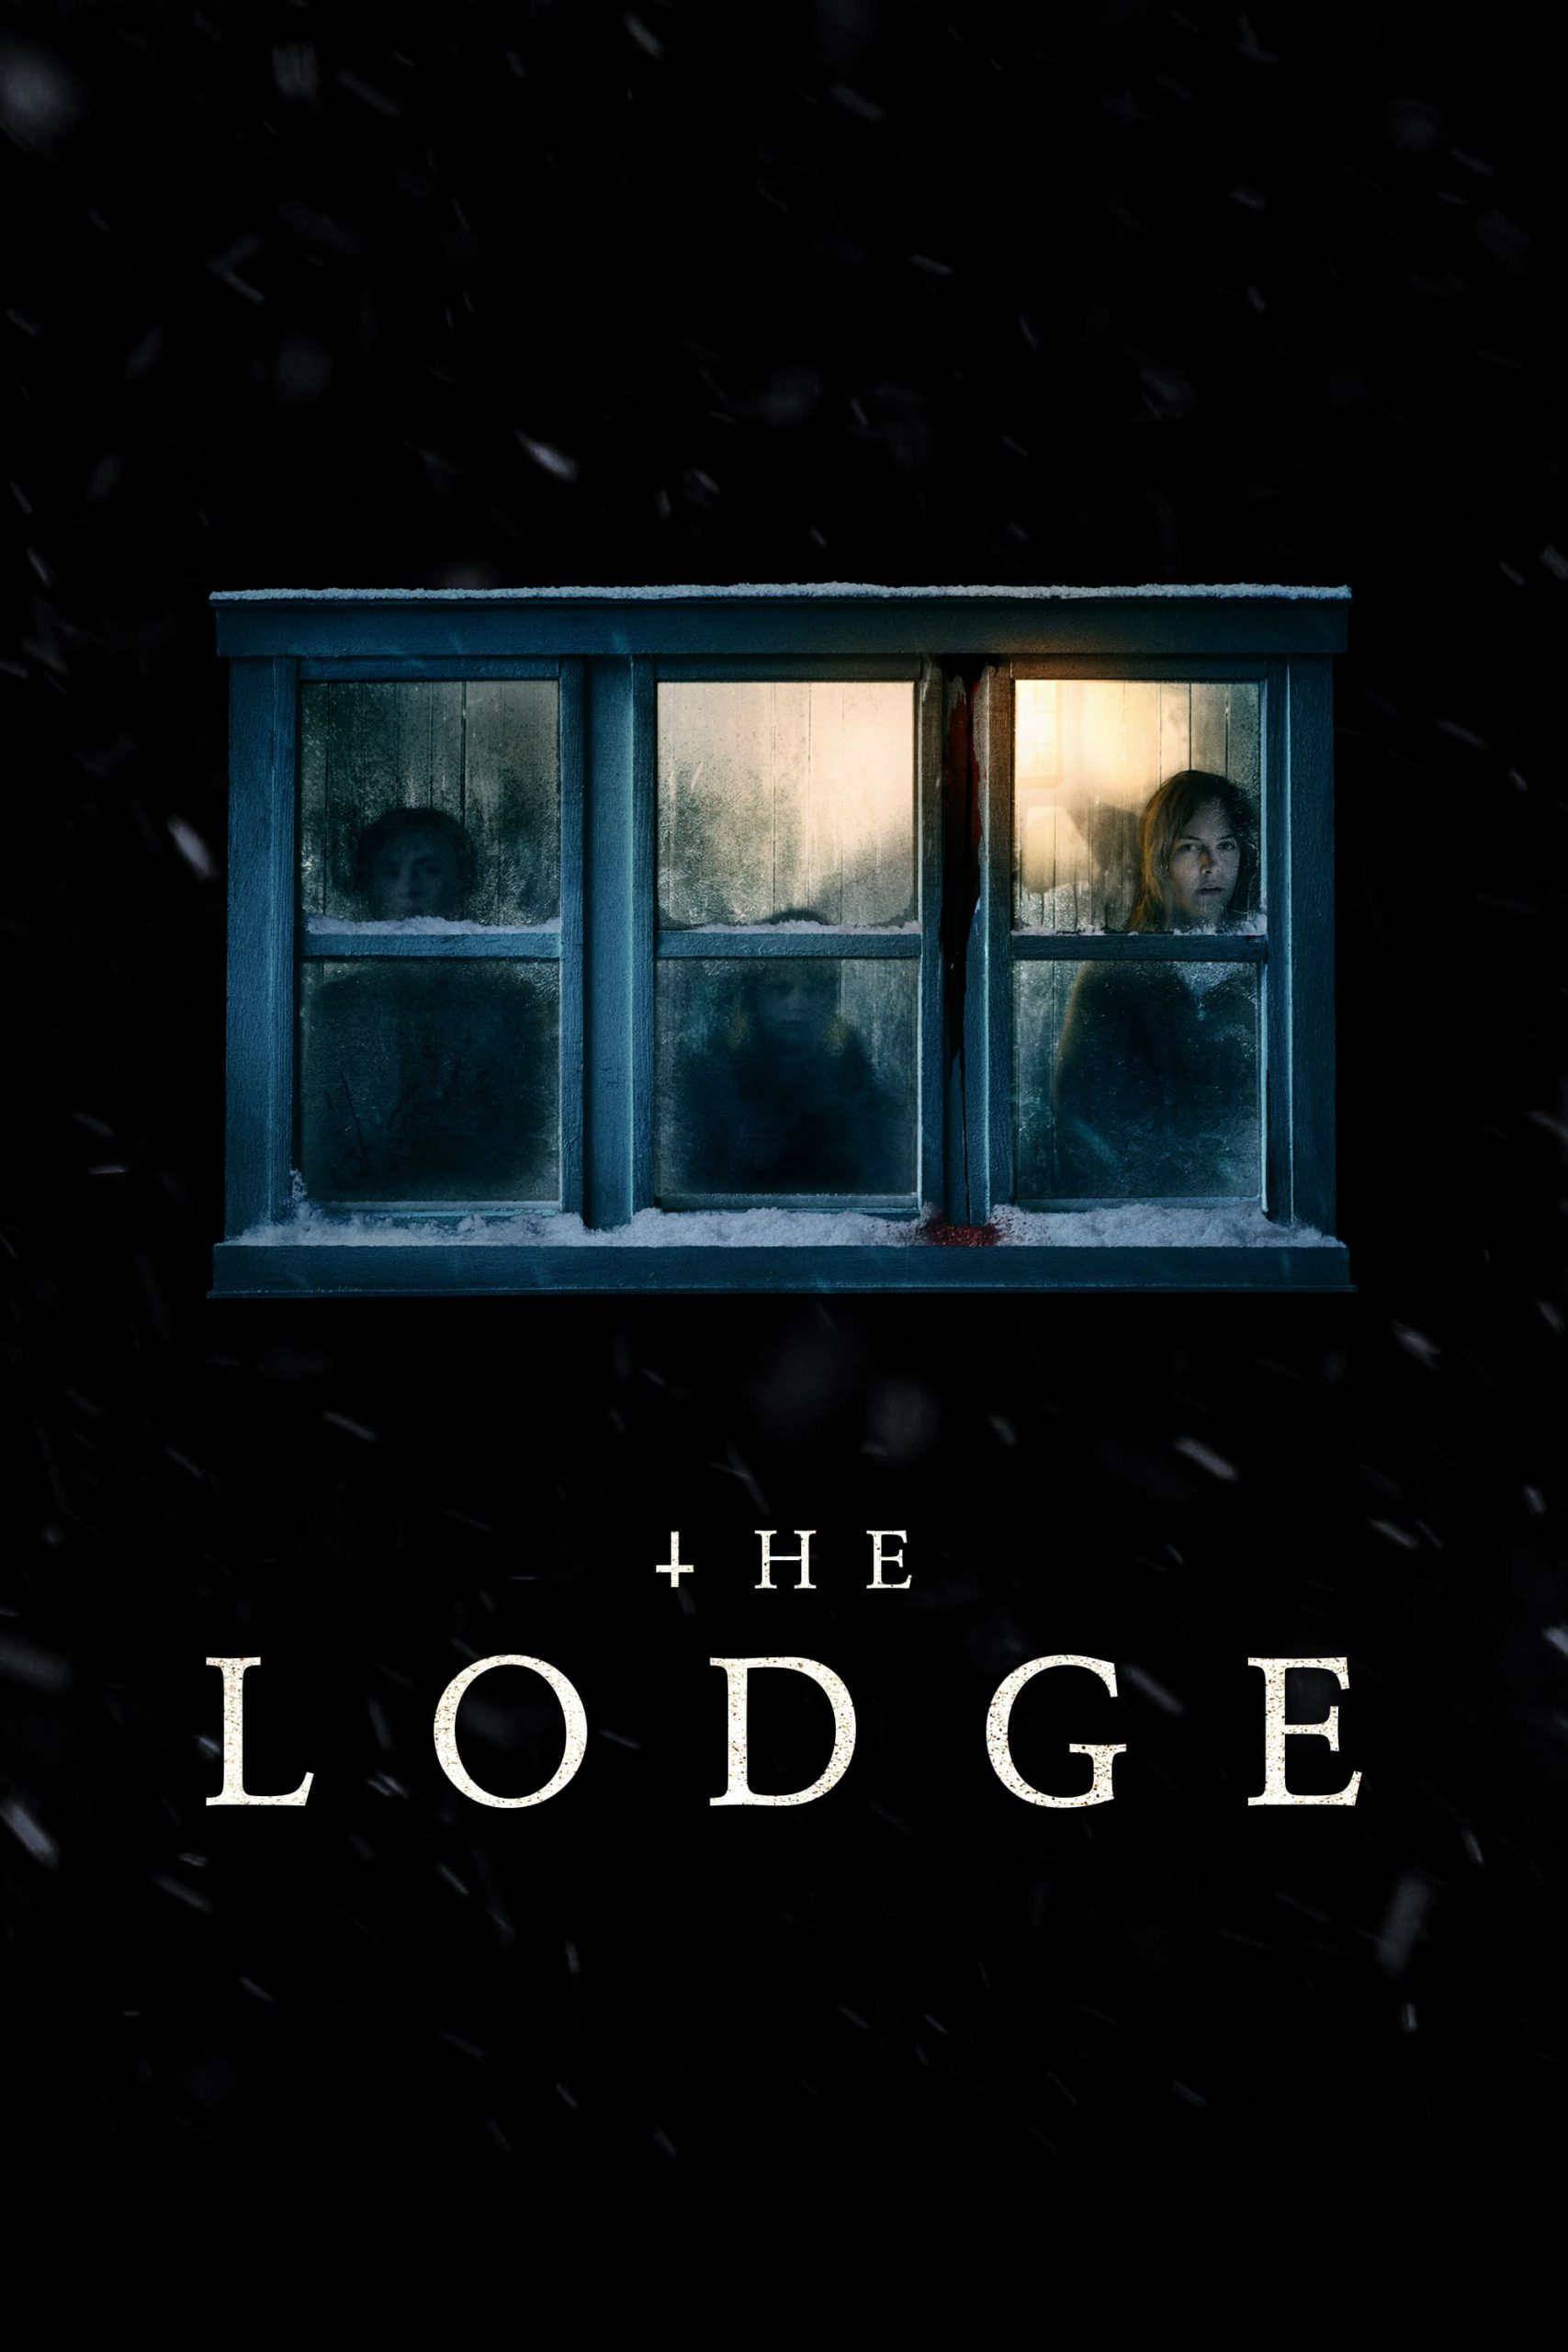 دانلود فیلم ترسناک کلبه با زیرنویس فارسی The Lodge 2019 BluRay